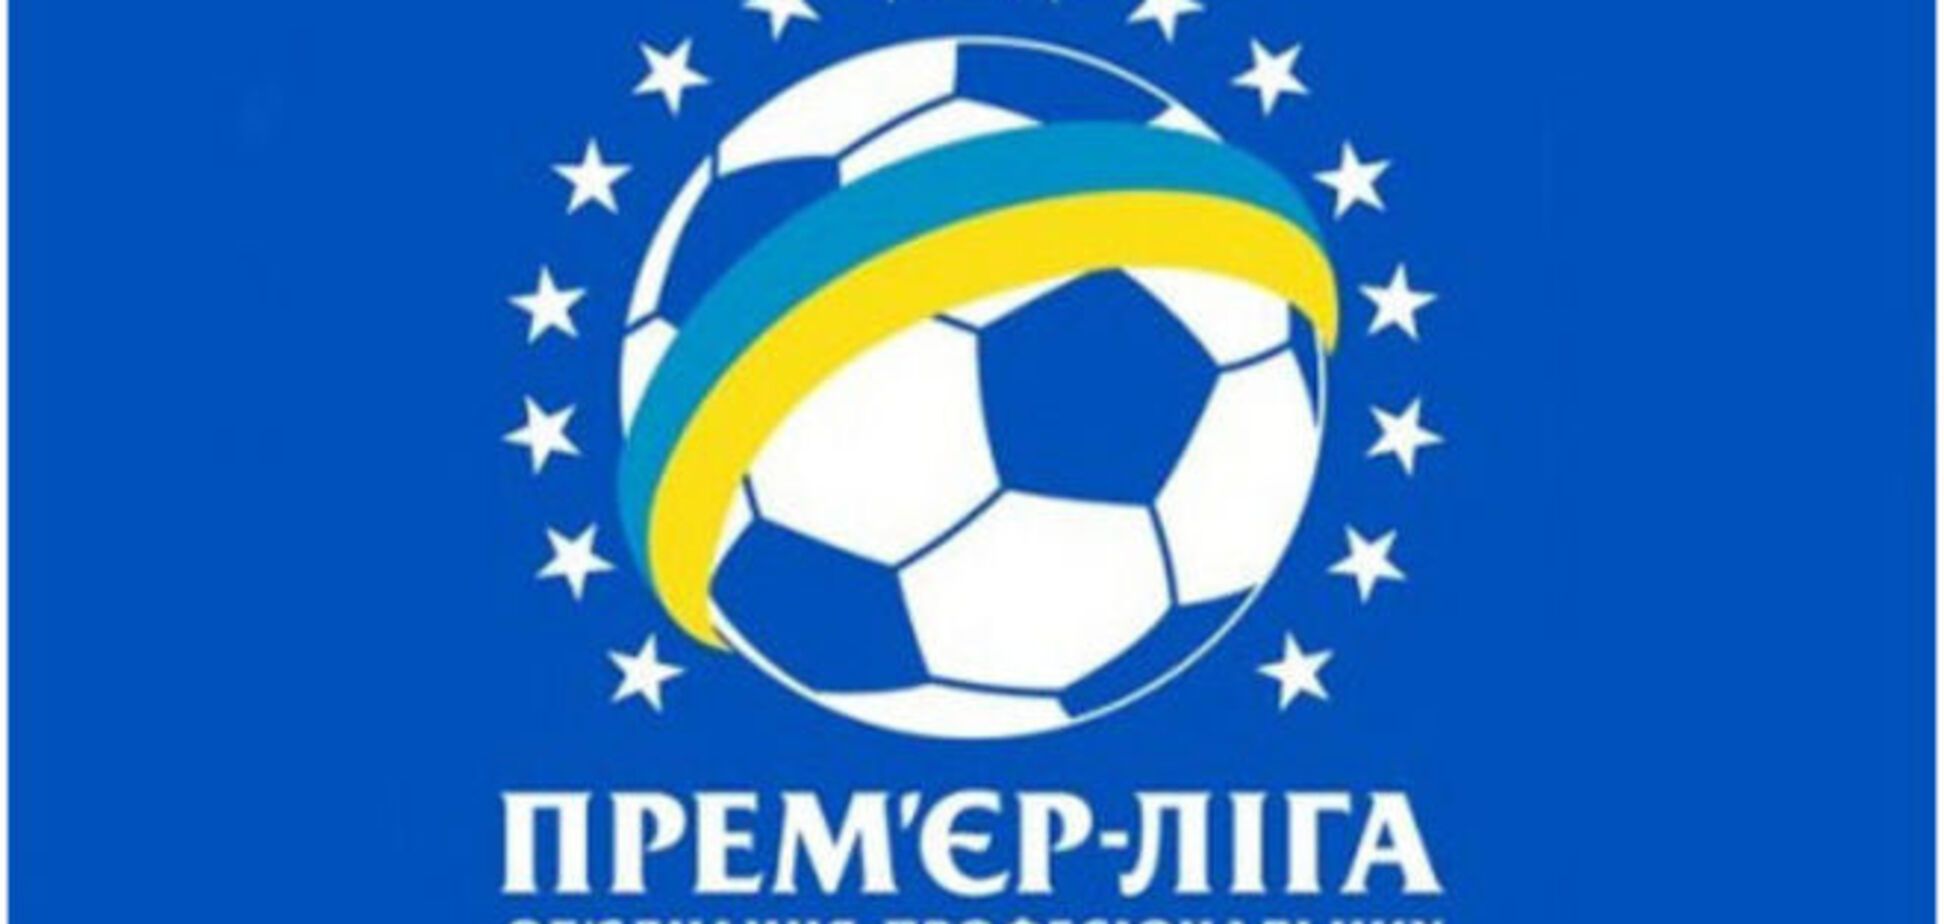 Неполуческу: утвержден формат чемпионата Украины на сезон 2015/16